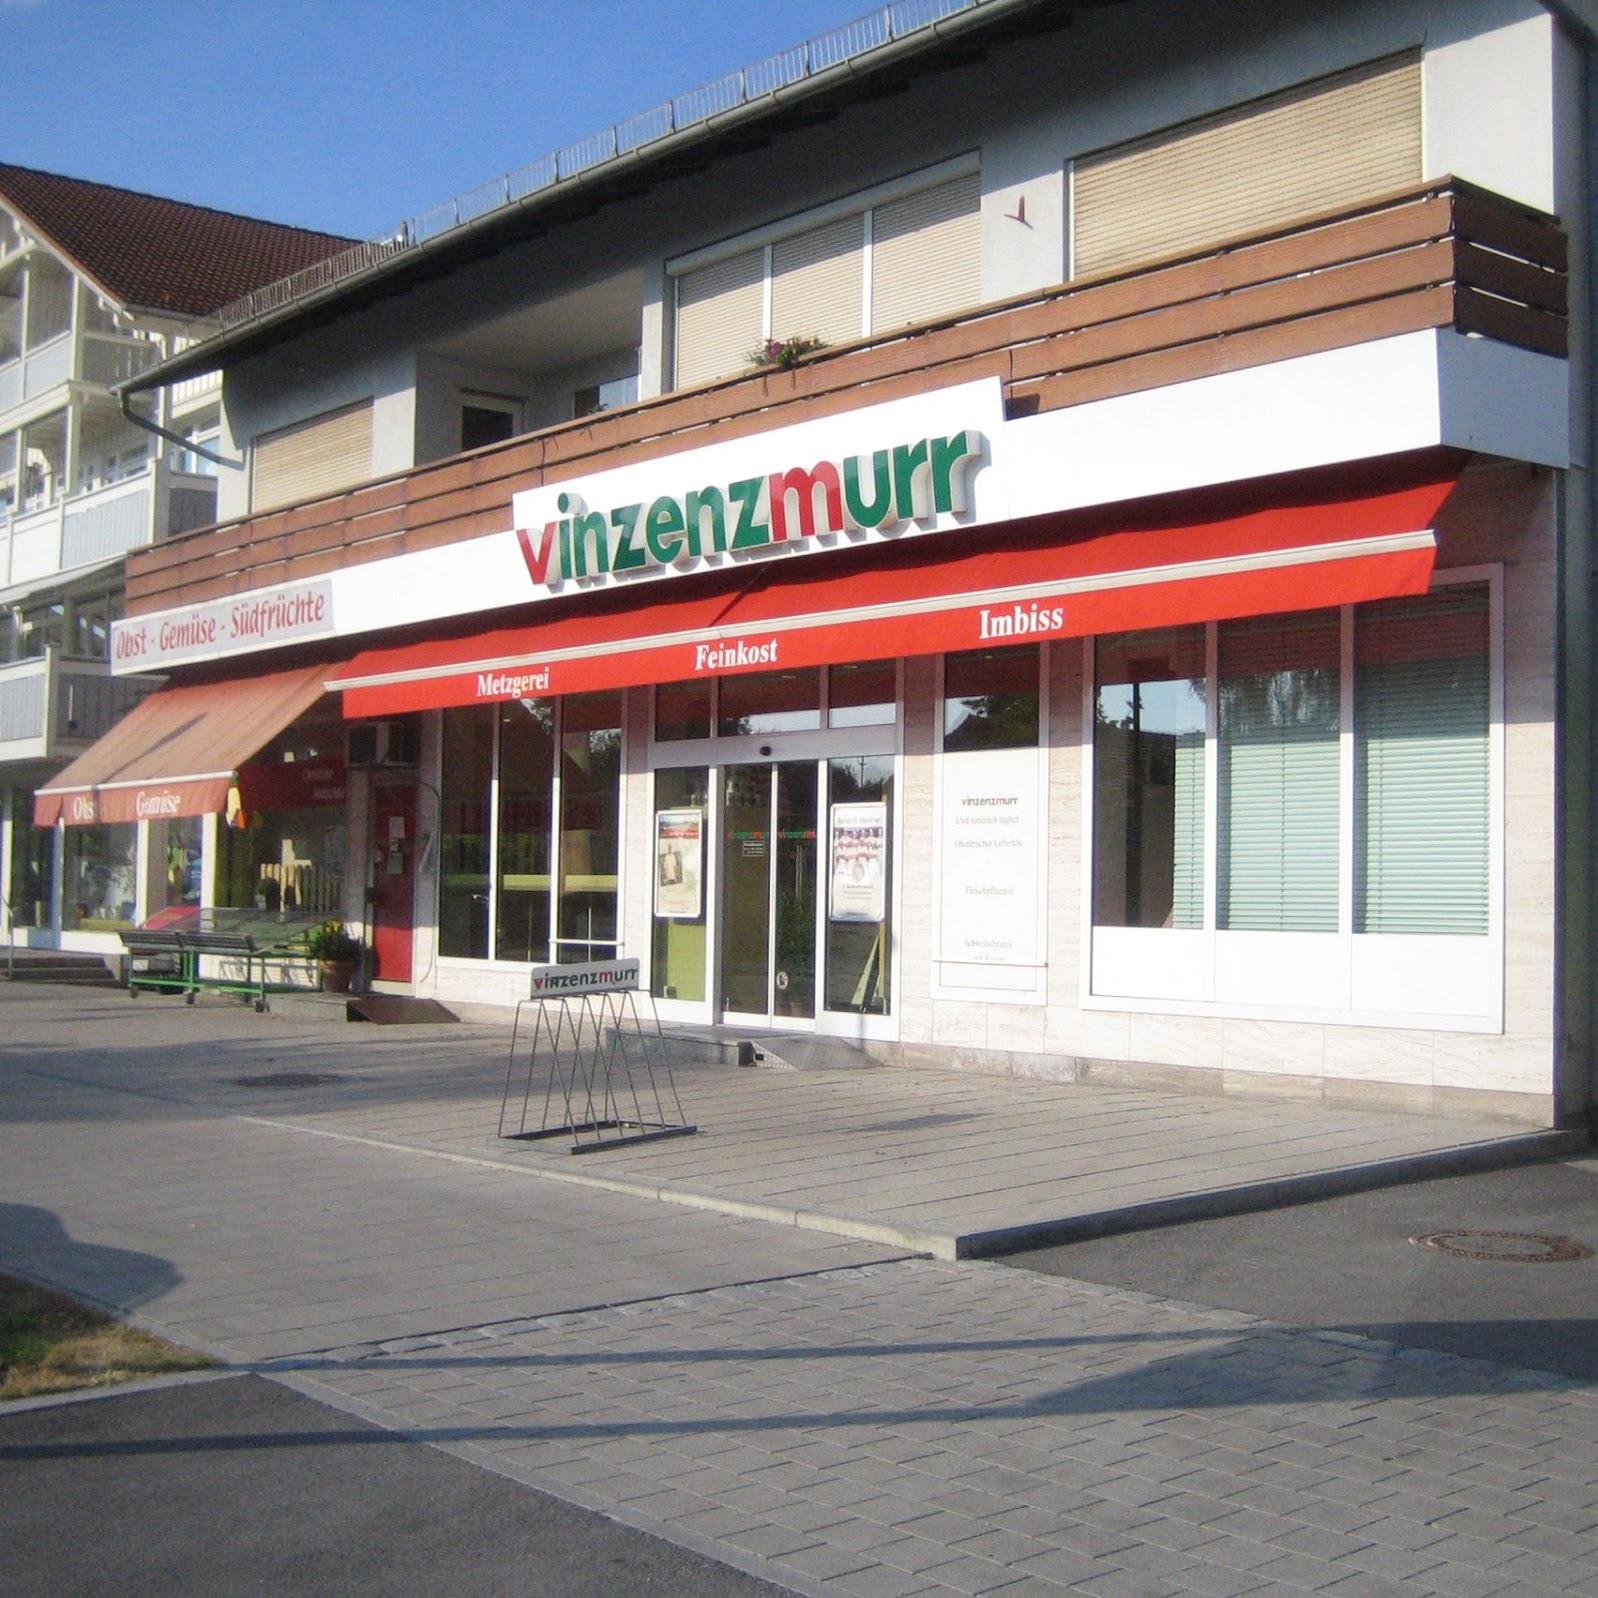 Restaurant "Vinzenzmurr Metzgerei - Hohenbrunn" in Ottobrunn